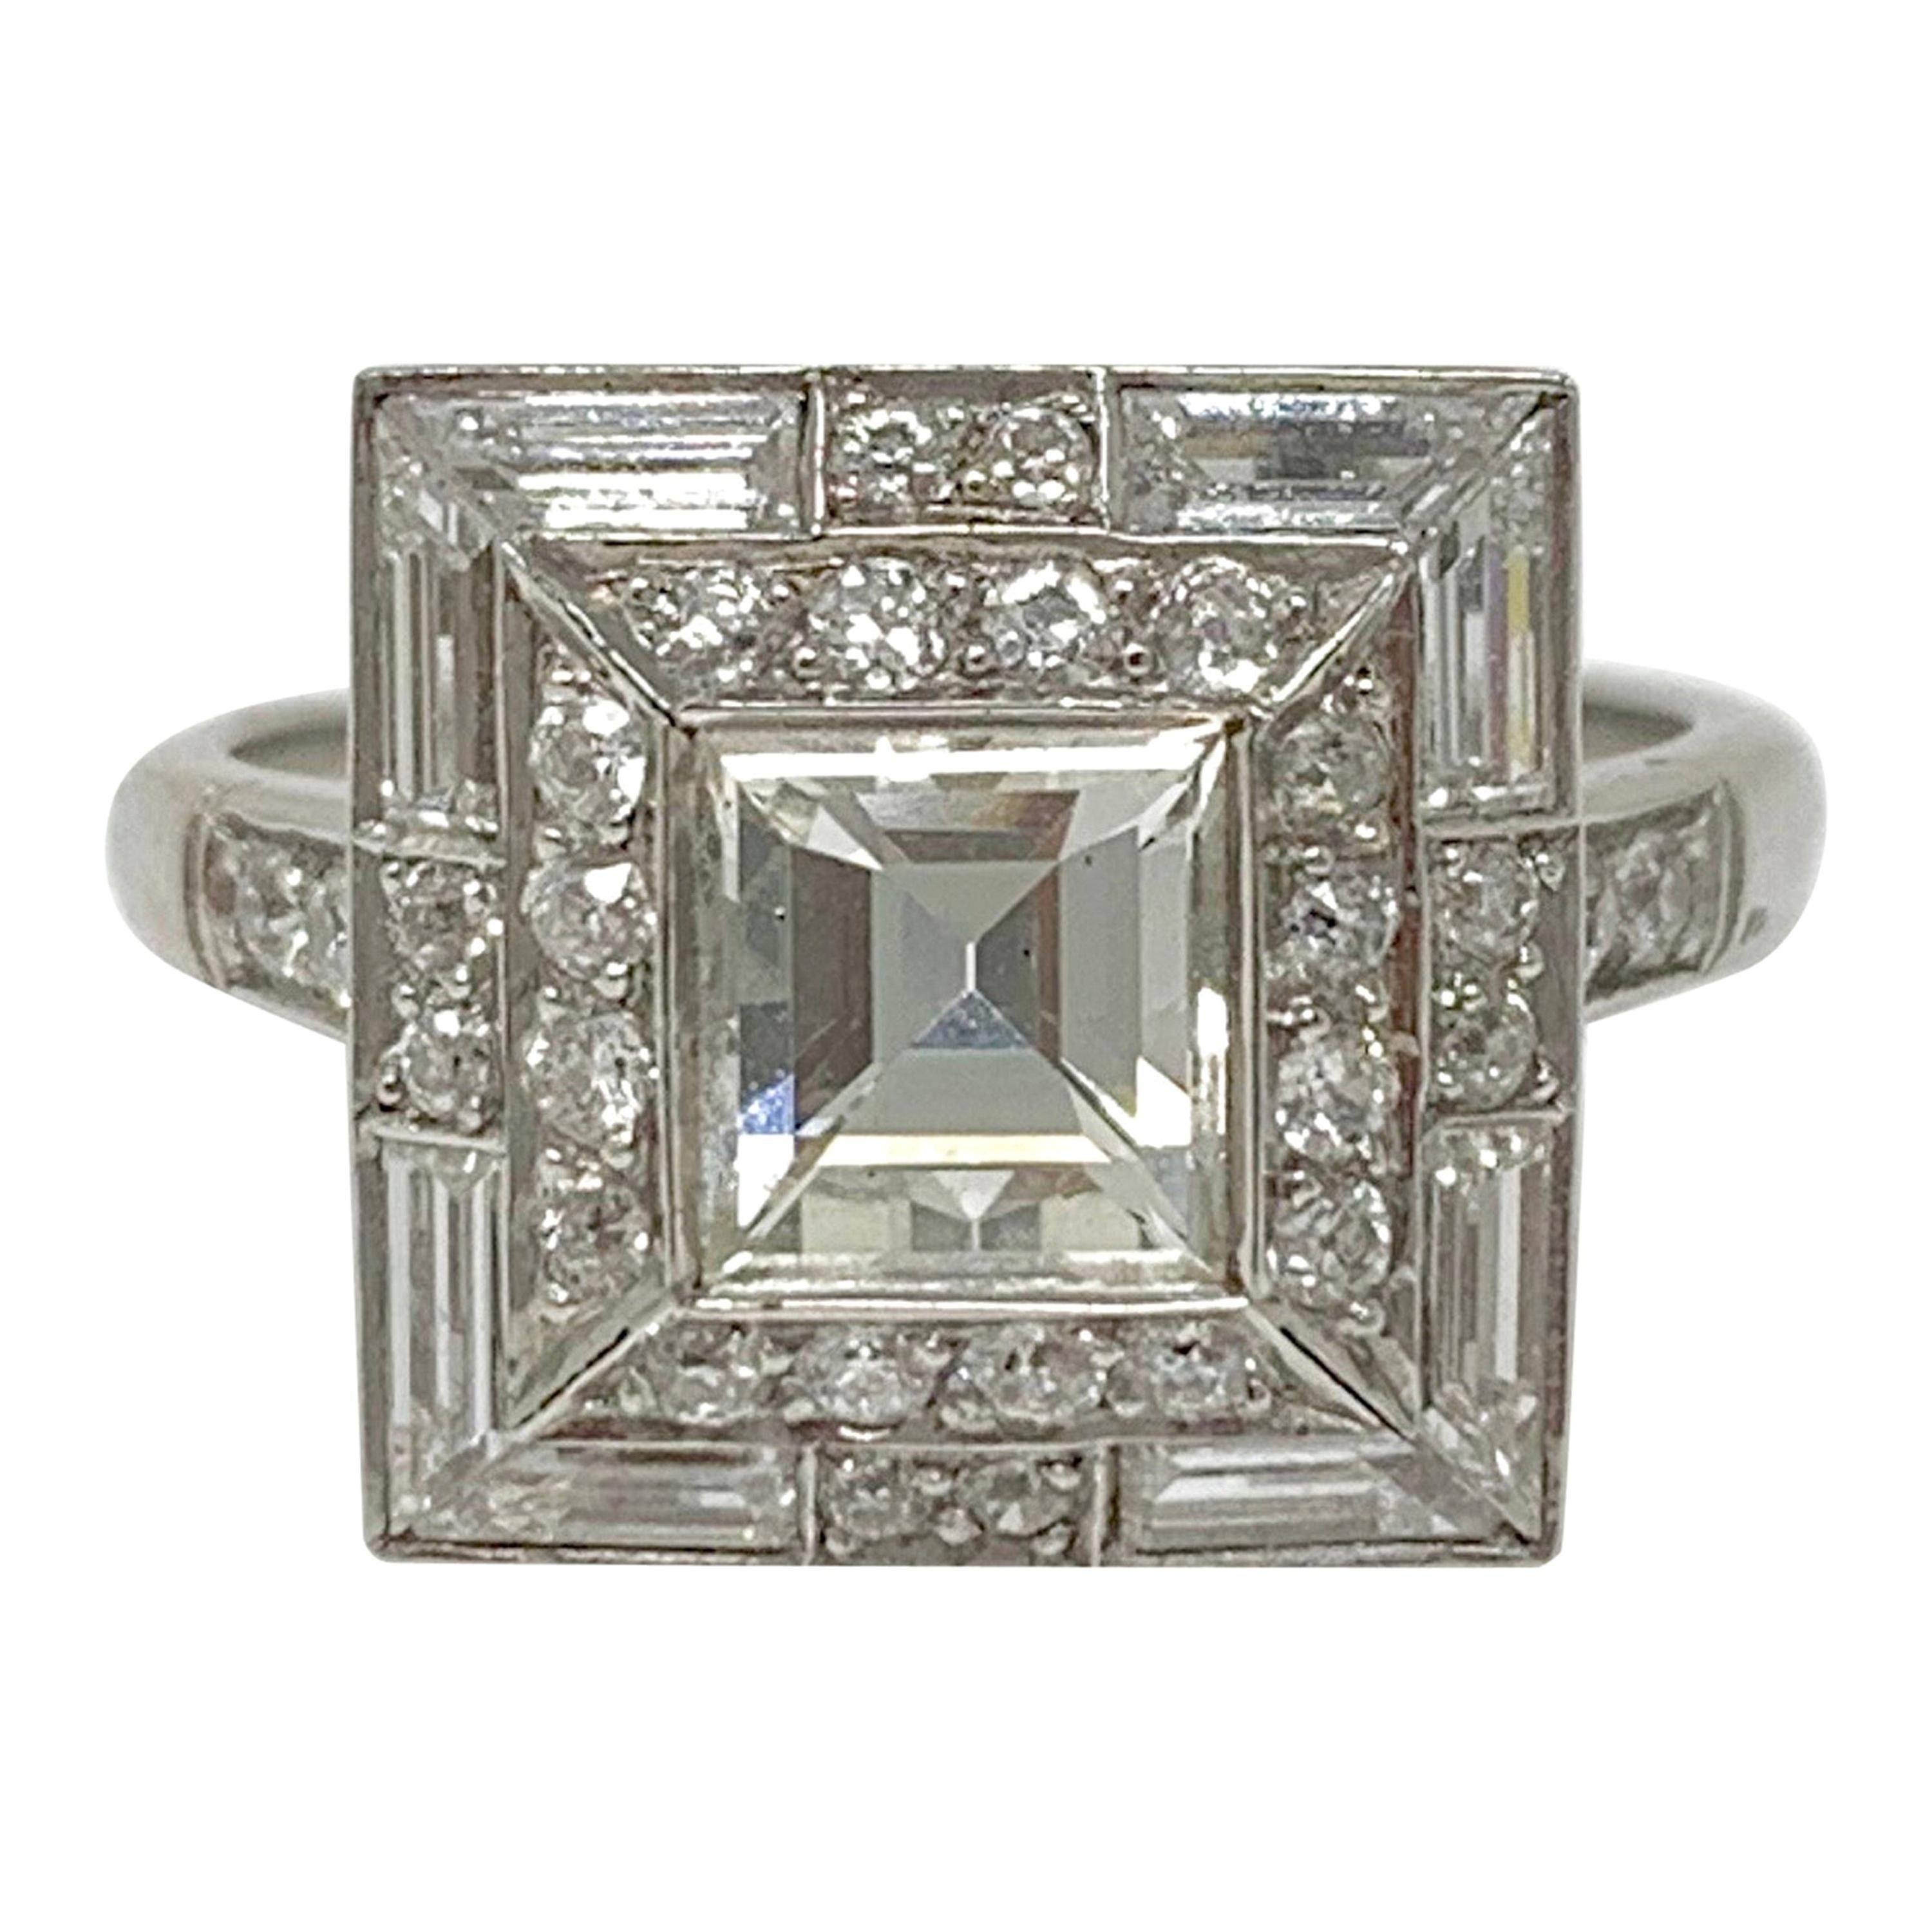 2.18 Carat Diamond Engagement Ring in Platinum